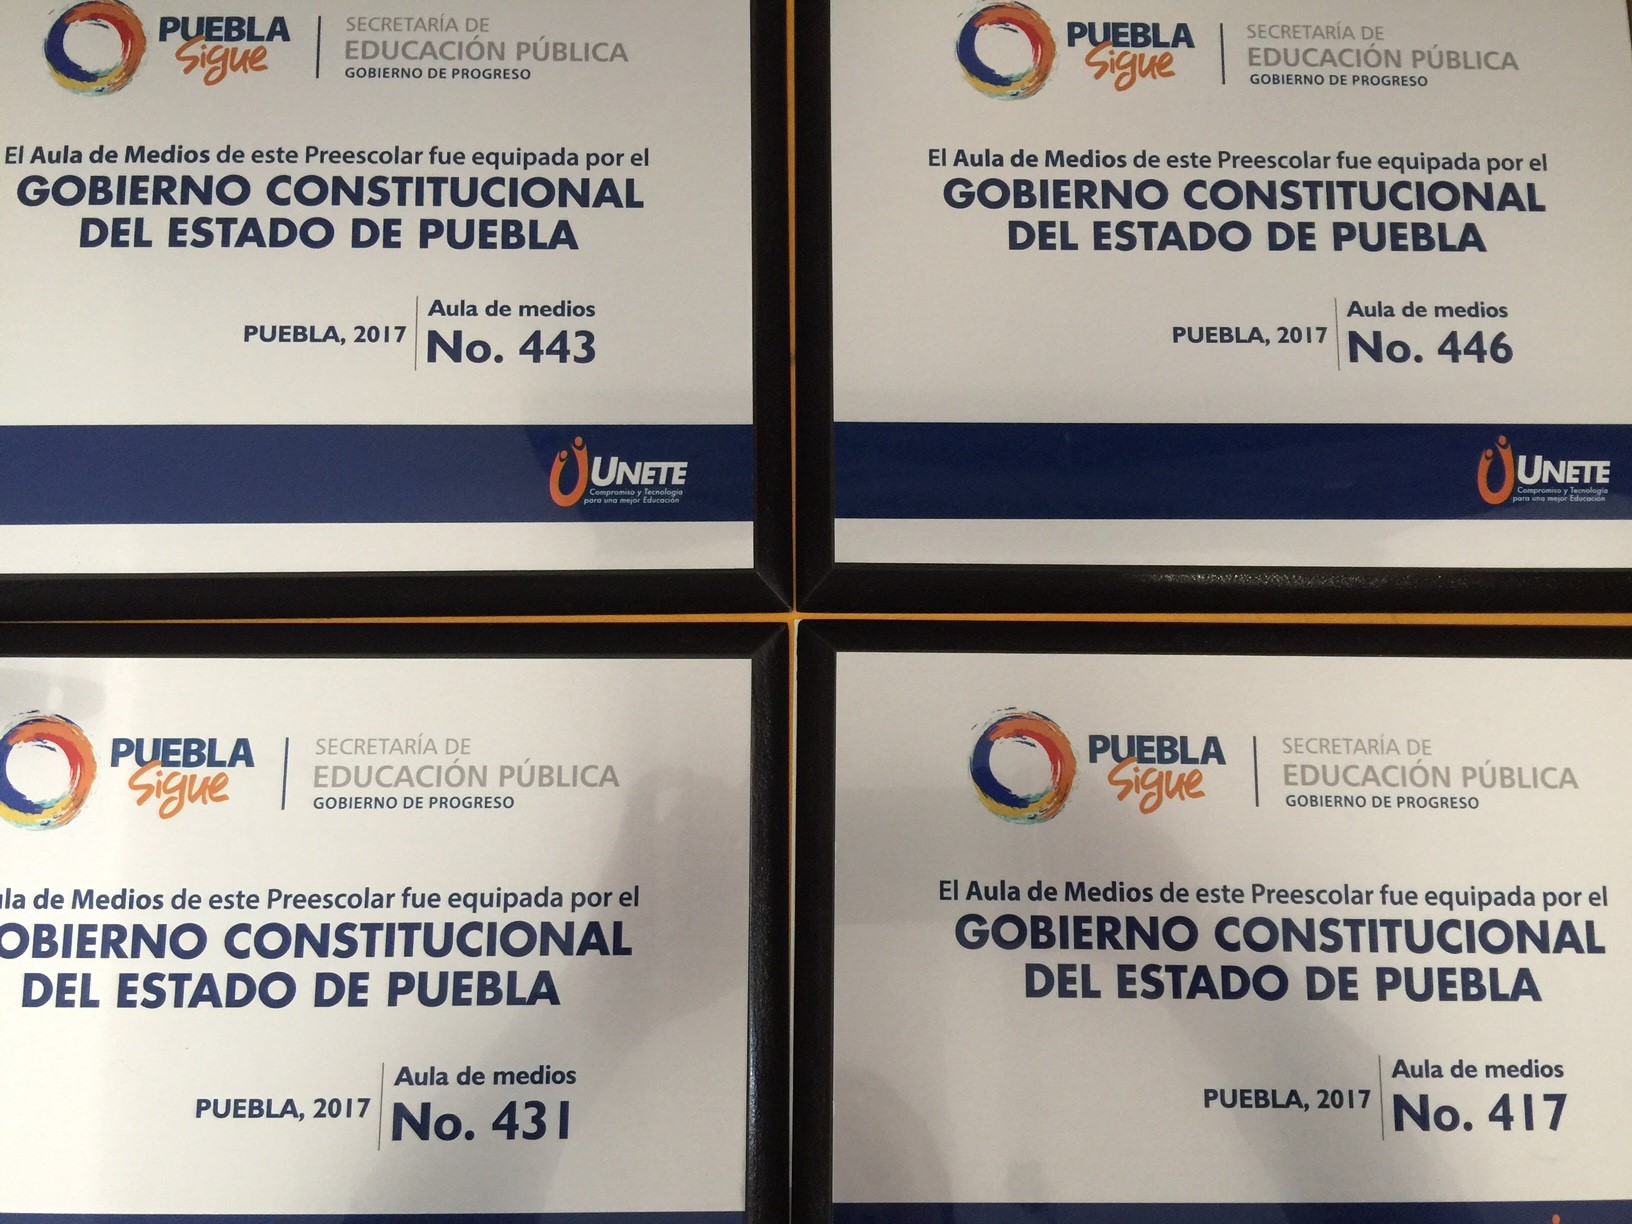 #GobiernodePuebla #Reconocimientos #KW Publicidad Corporativa 3, Trabajos Recientes